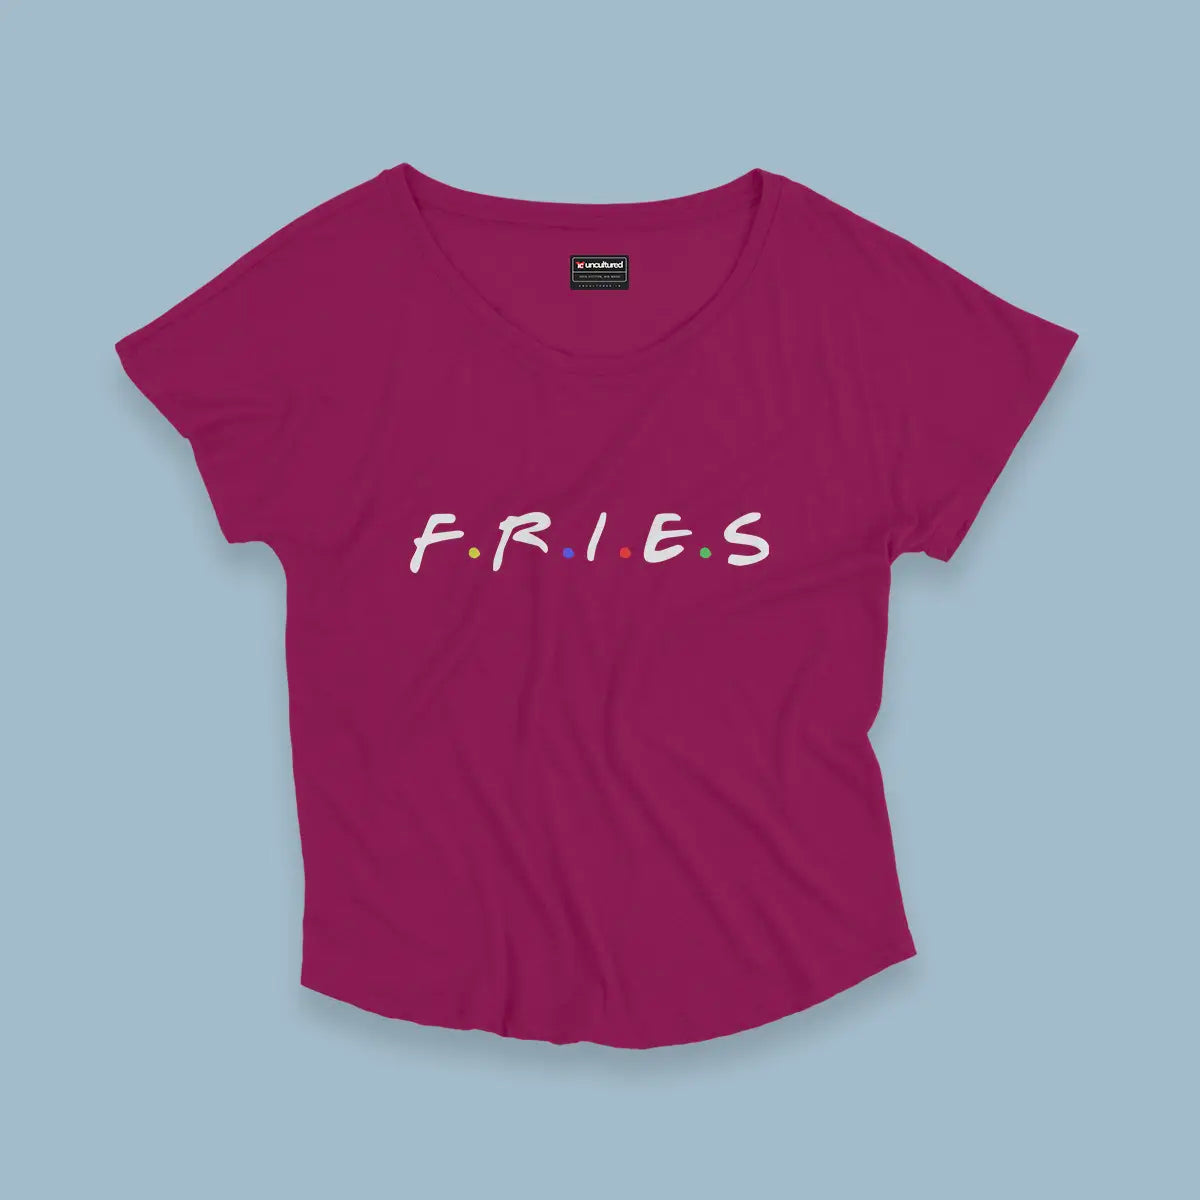 Fries - Croptop